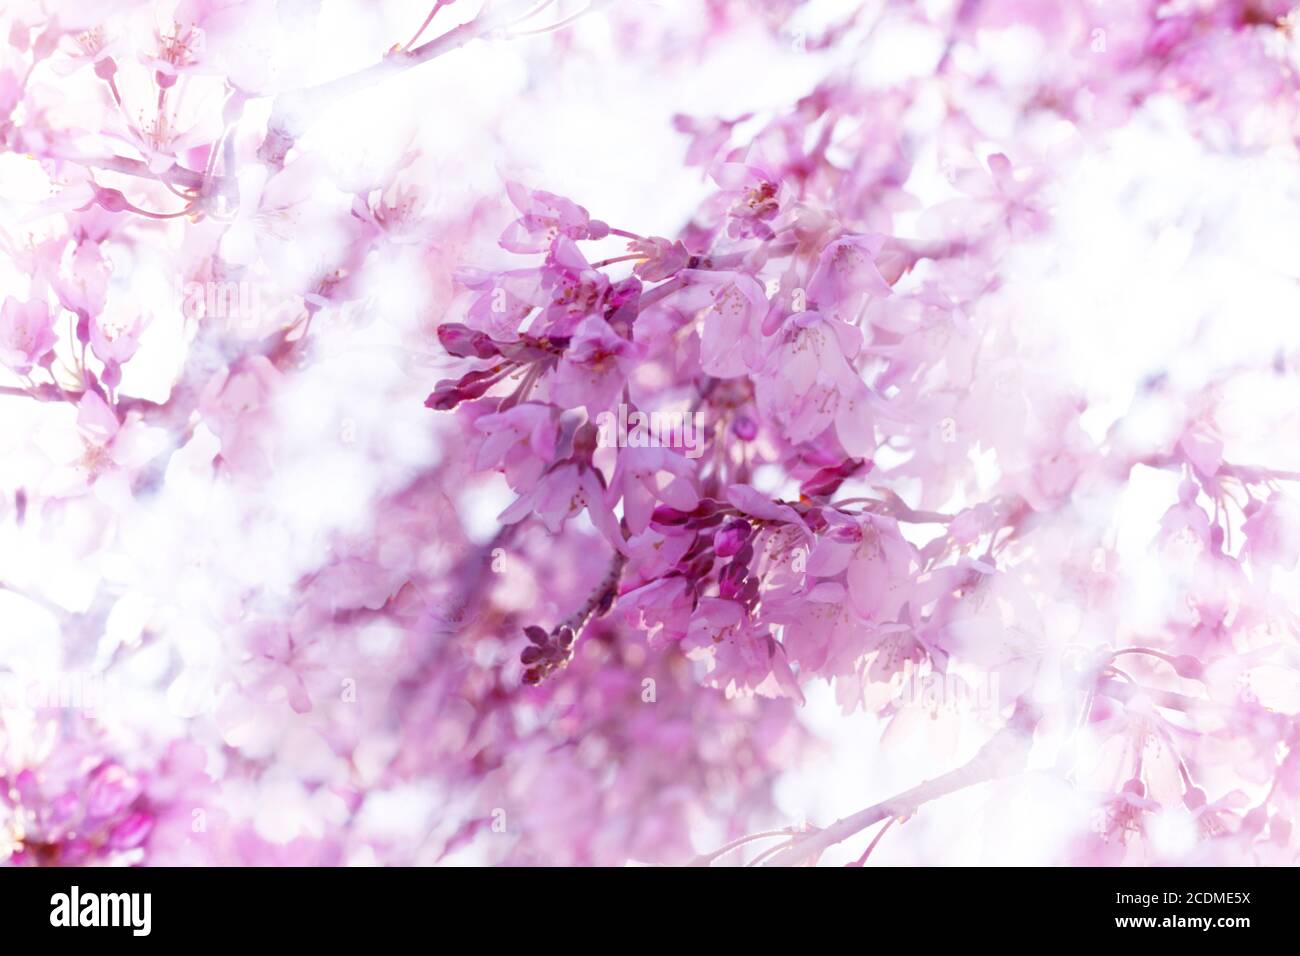 Fantasy Foto Illustration von weinenden Kirschblüten wtih verträumt, diffuse Überzüge in rosa und weiß Stockfoto